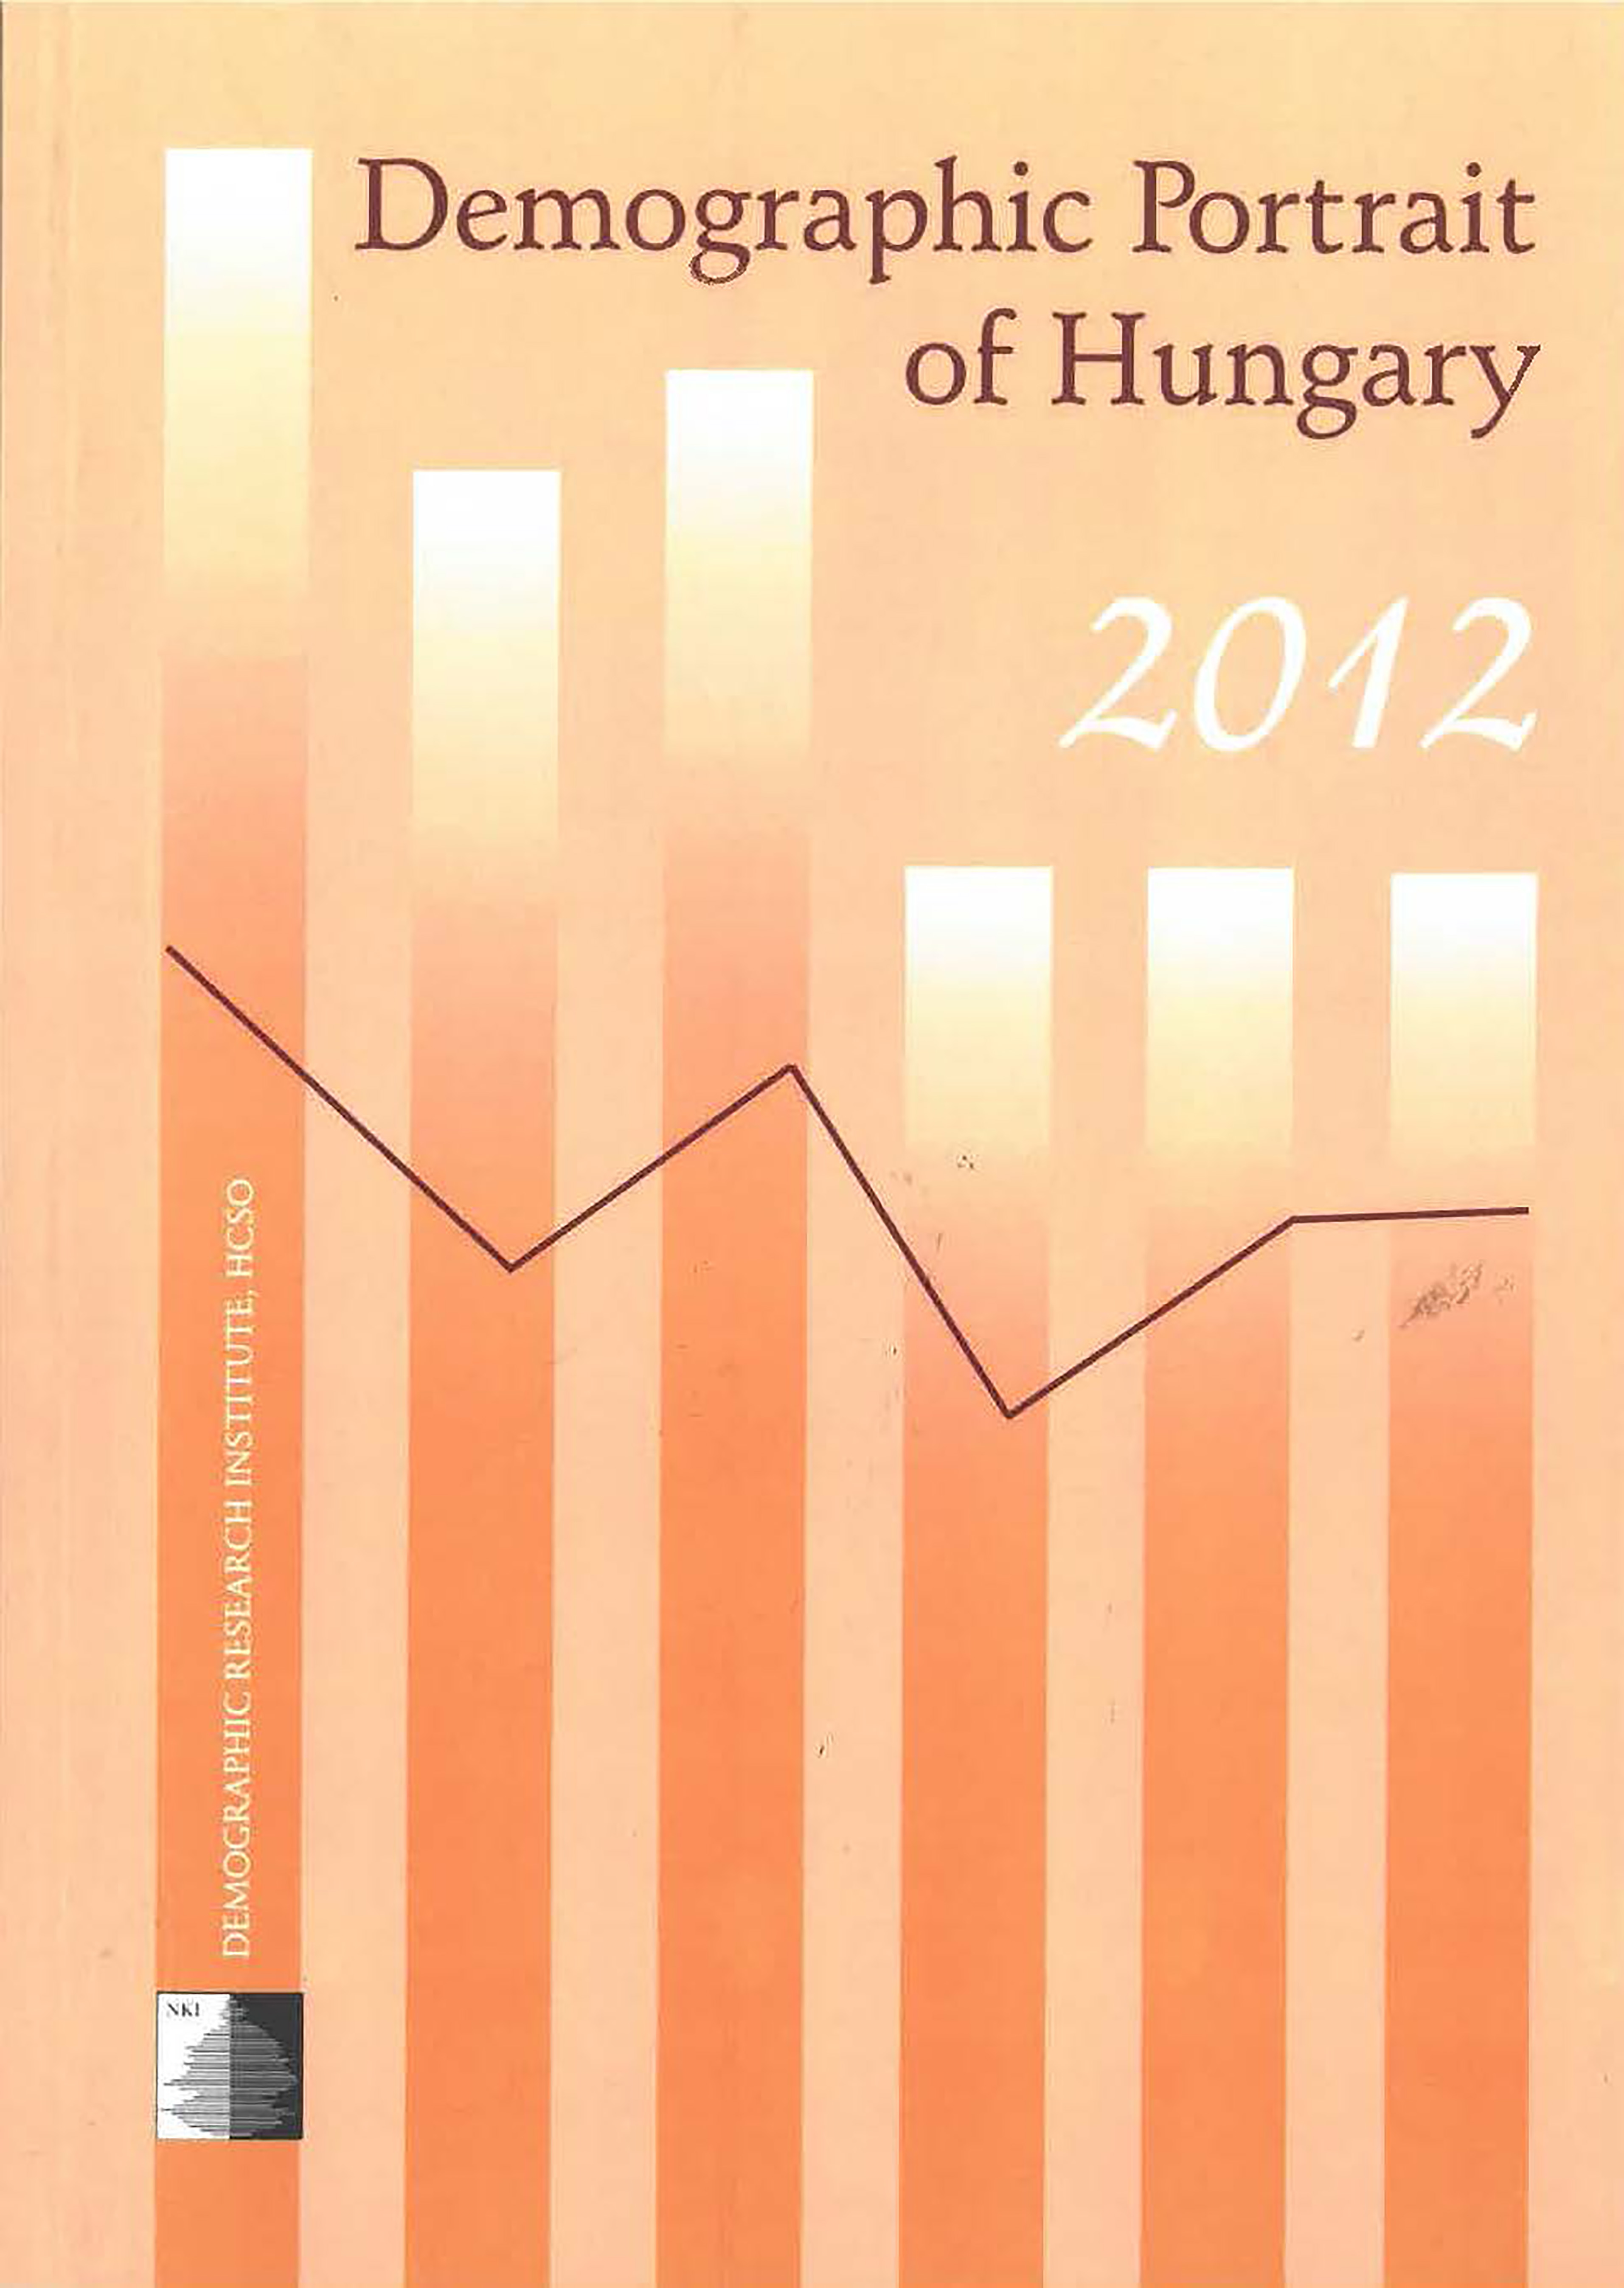 					View Őri, Péter - Spéder, Zsolt (eds.): Demographic Portrait of Hungary 2012
				